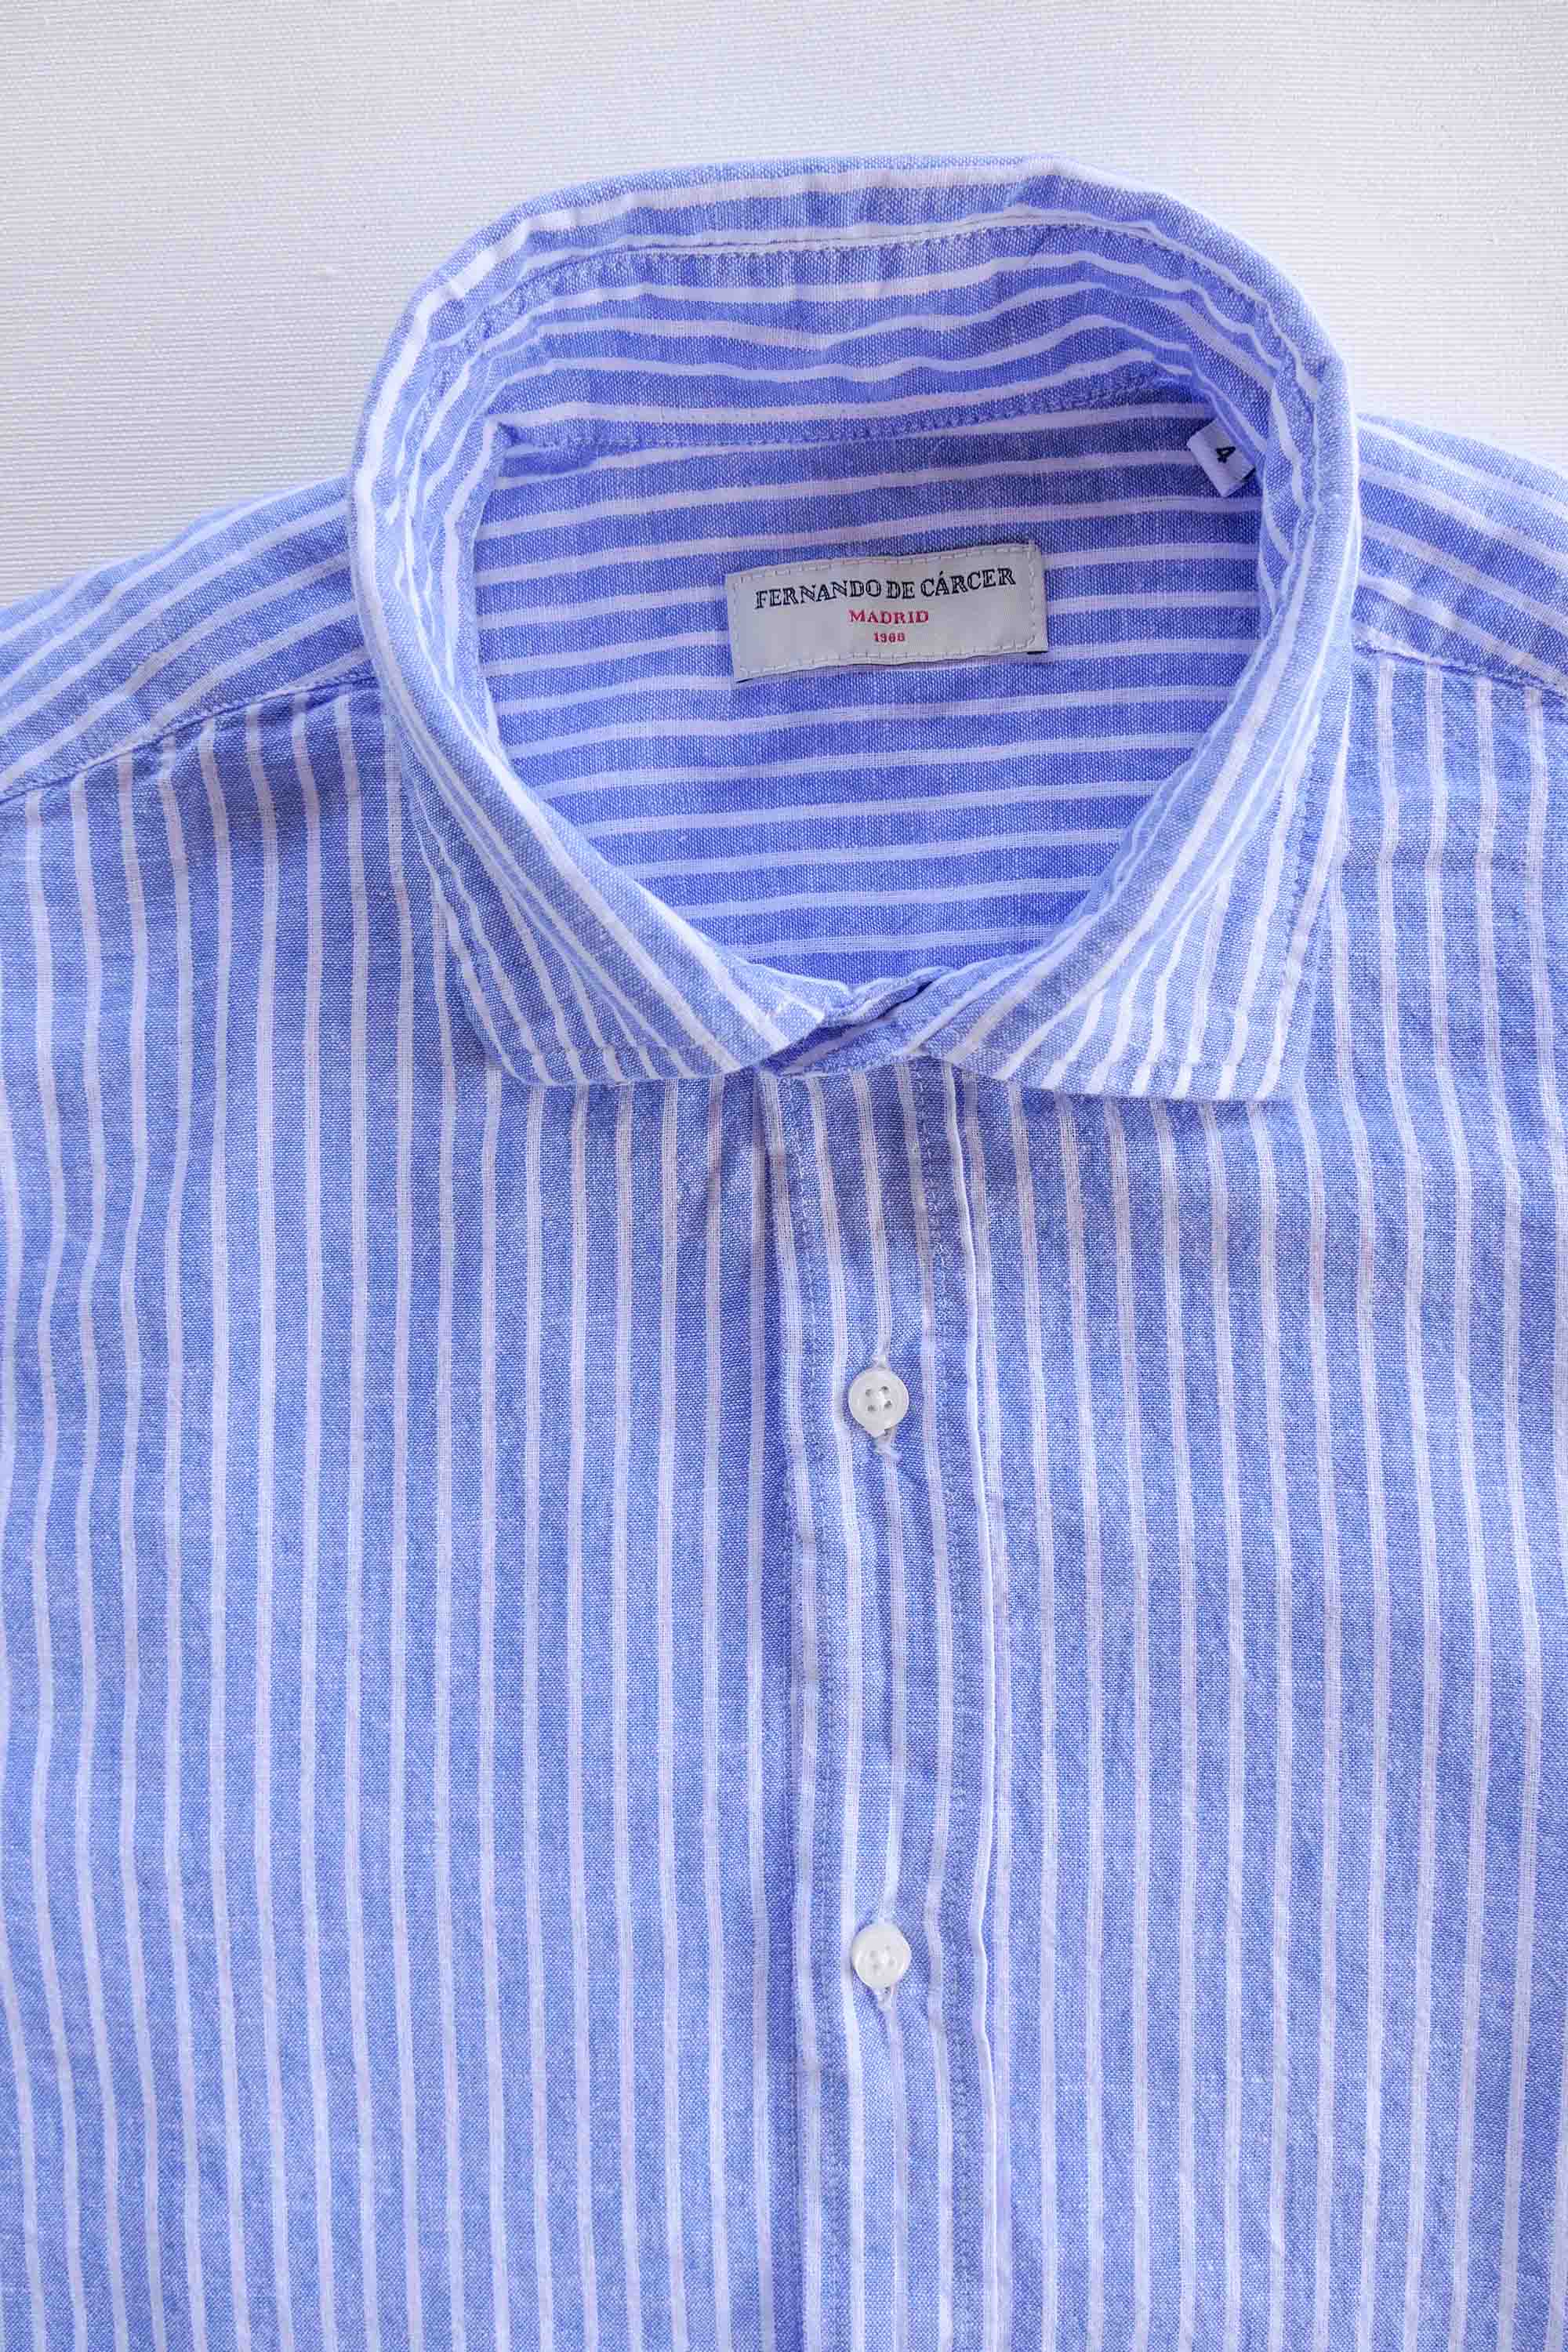 Camisa de Lino - Rayas Azul y Blanco